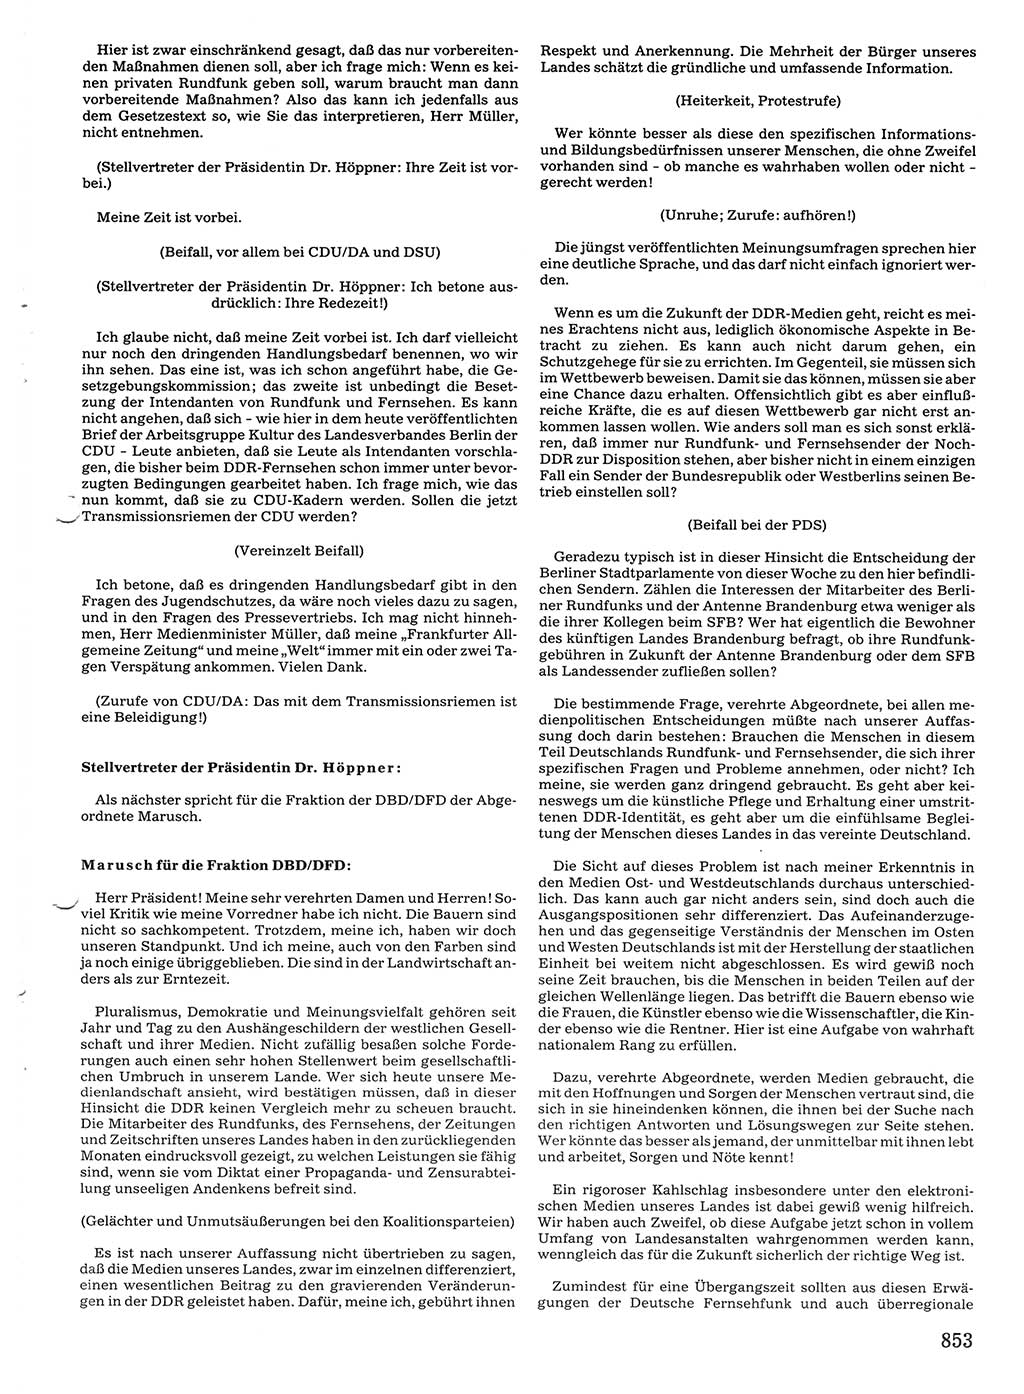 Tagungen der Volkskammer (VK) der Deutschen Demokratischen Republik (DDR), 10. Wahlperiode 1990, Seite 853 (VK. DDR 10. WP. 1990, Prot. Tg. 1-38, 5.4.-2.10.1990, S. 853)